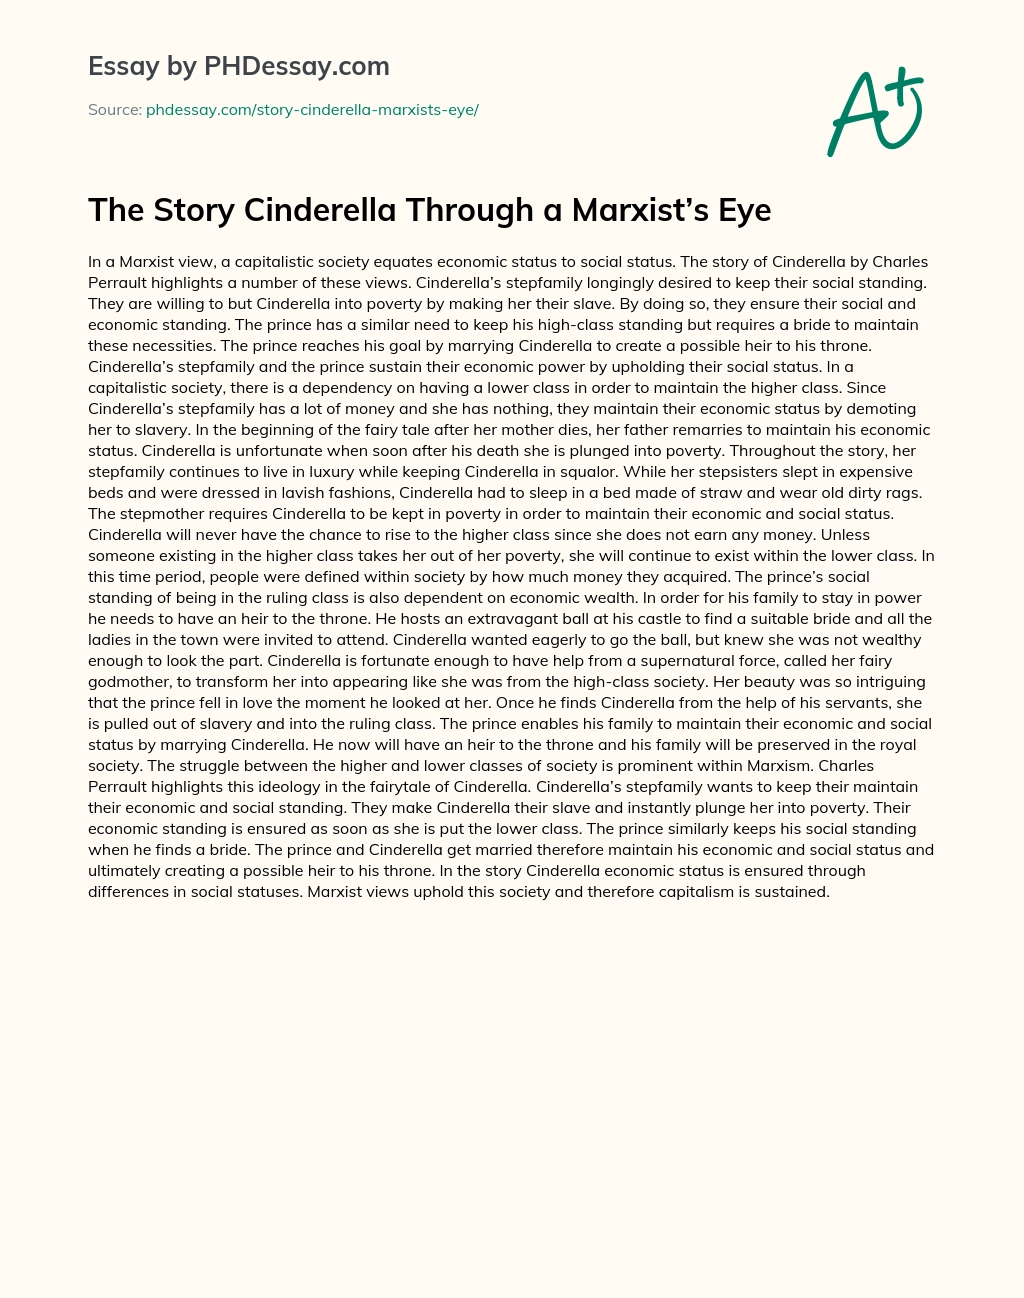 The Story Cinderella Through a Marxist’s Eye essay